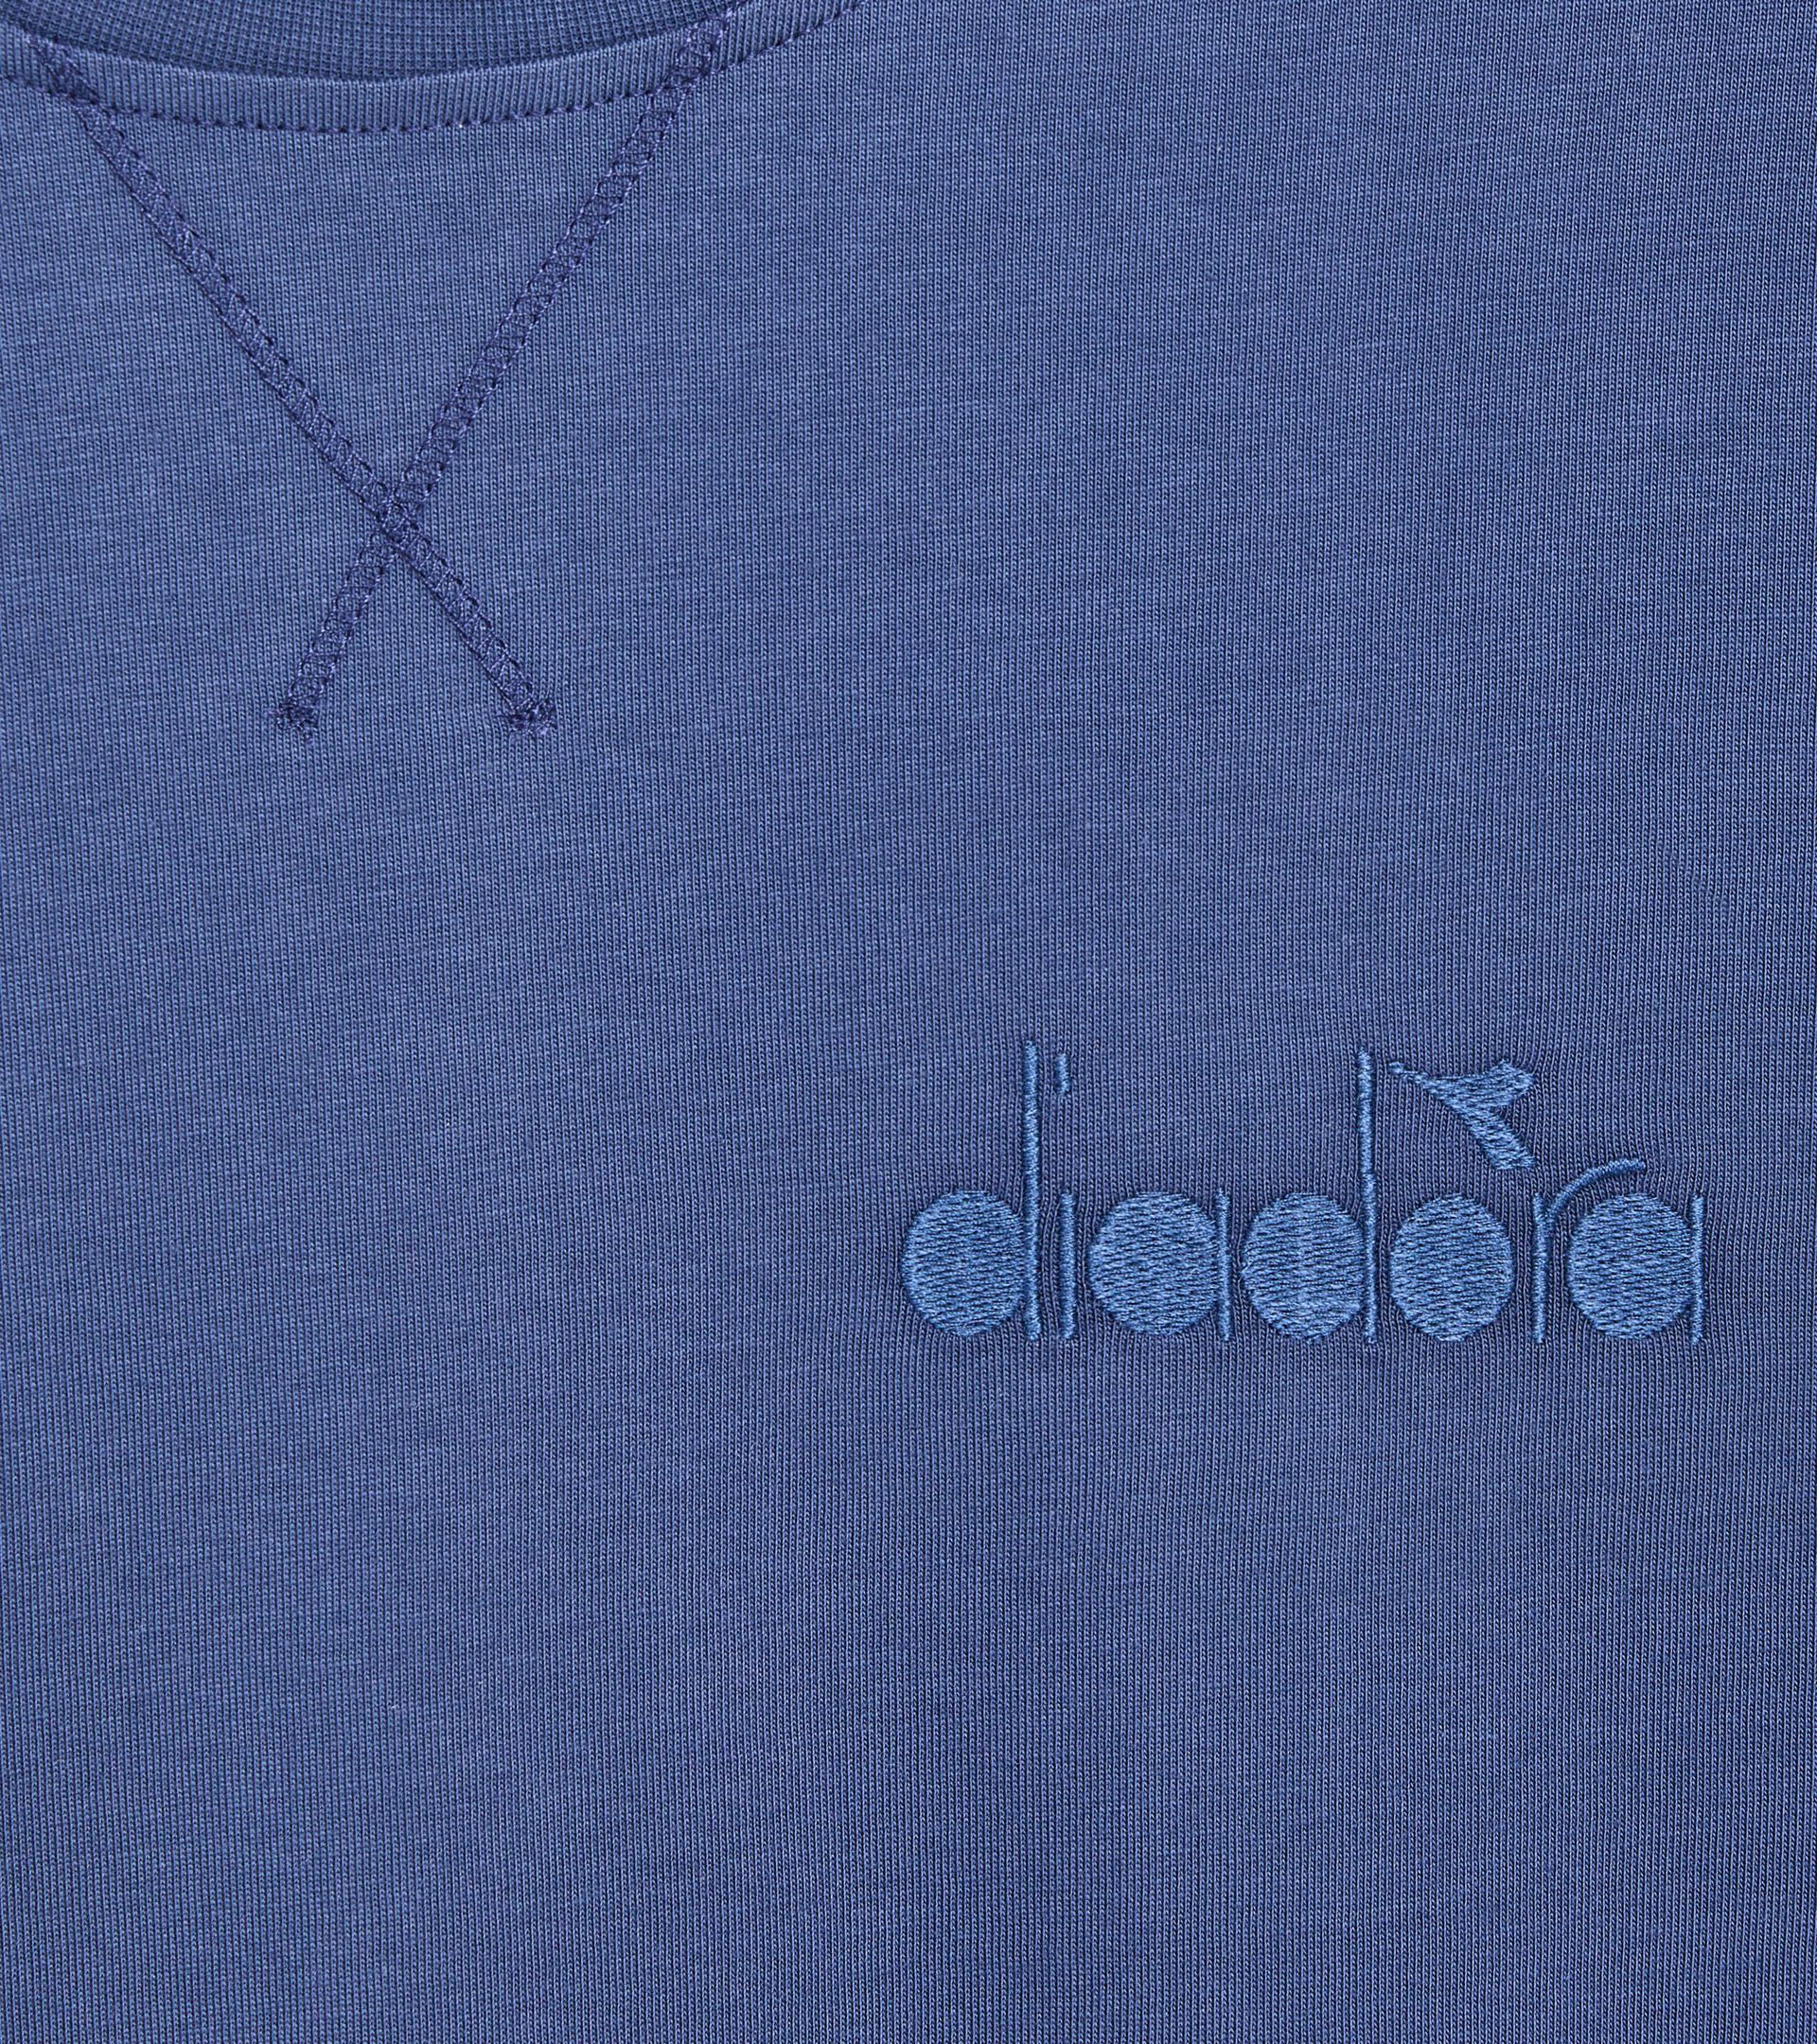 T-shirt - Gender Neutral T-SHIRT SS ATHL. LOGO OCEANA - Diadora